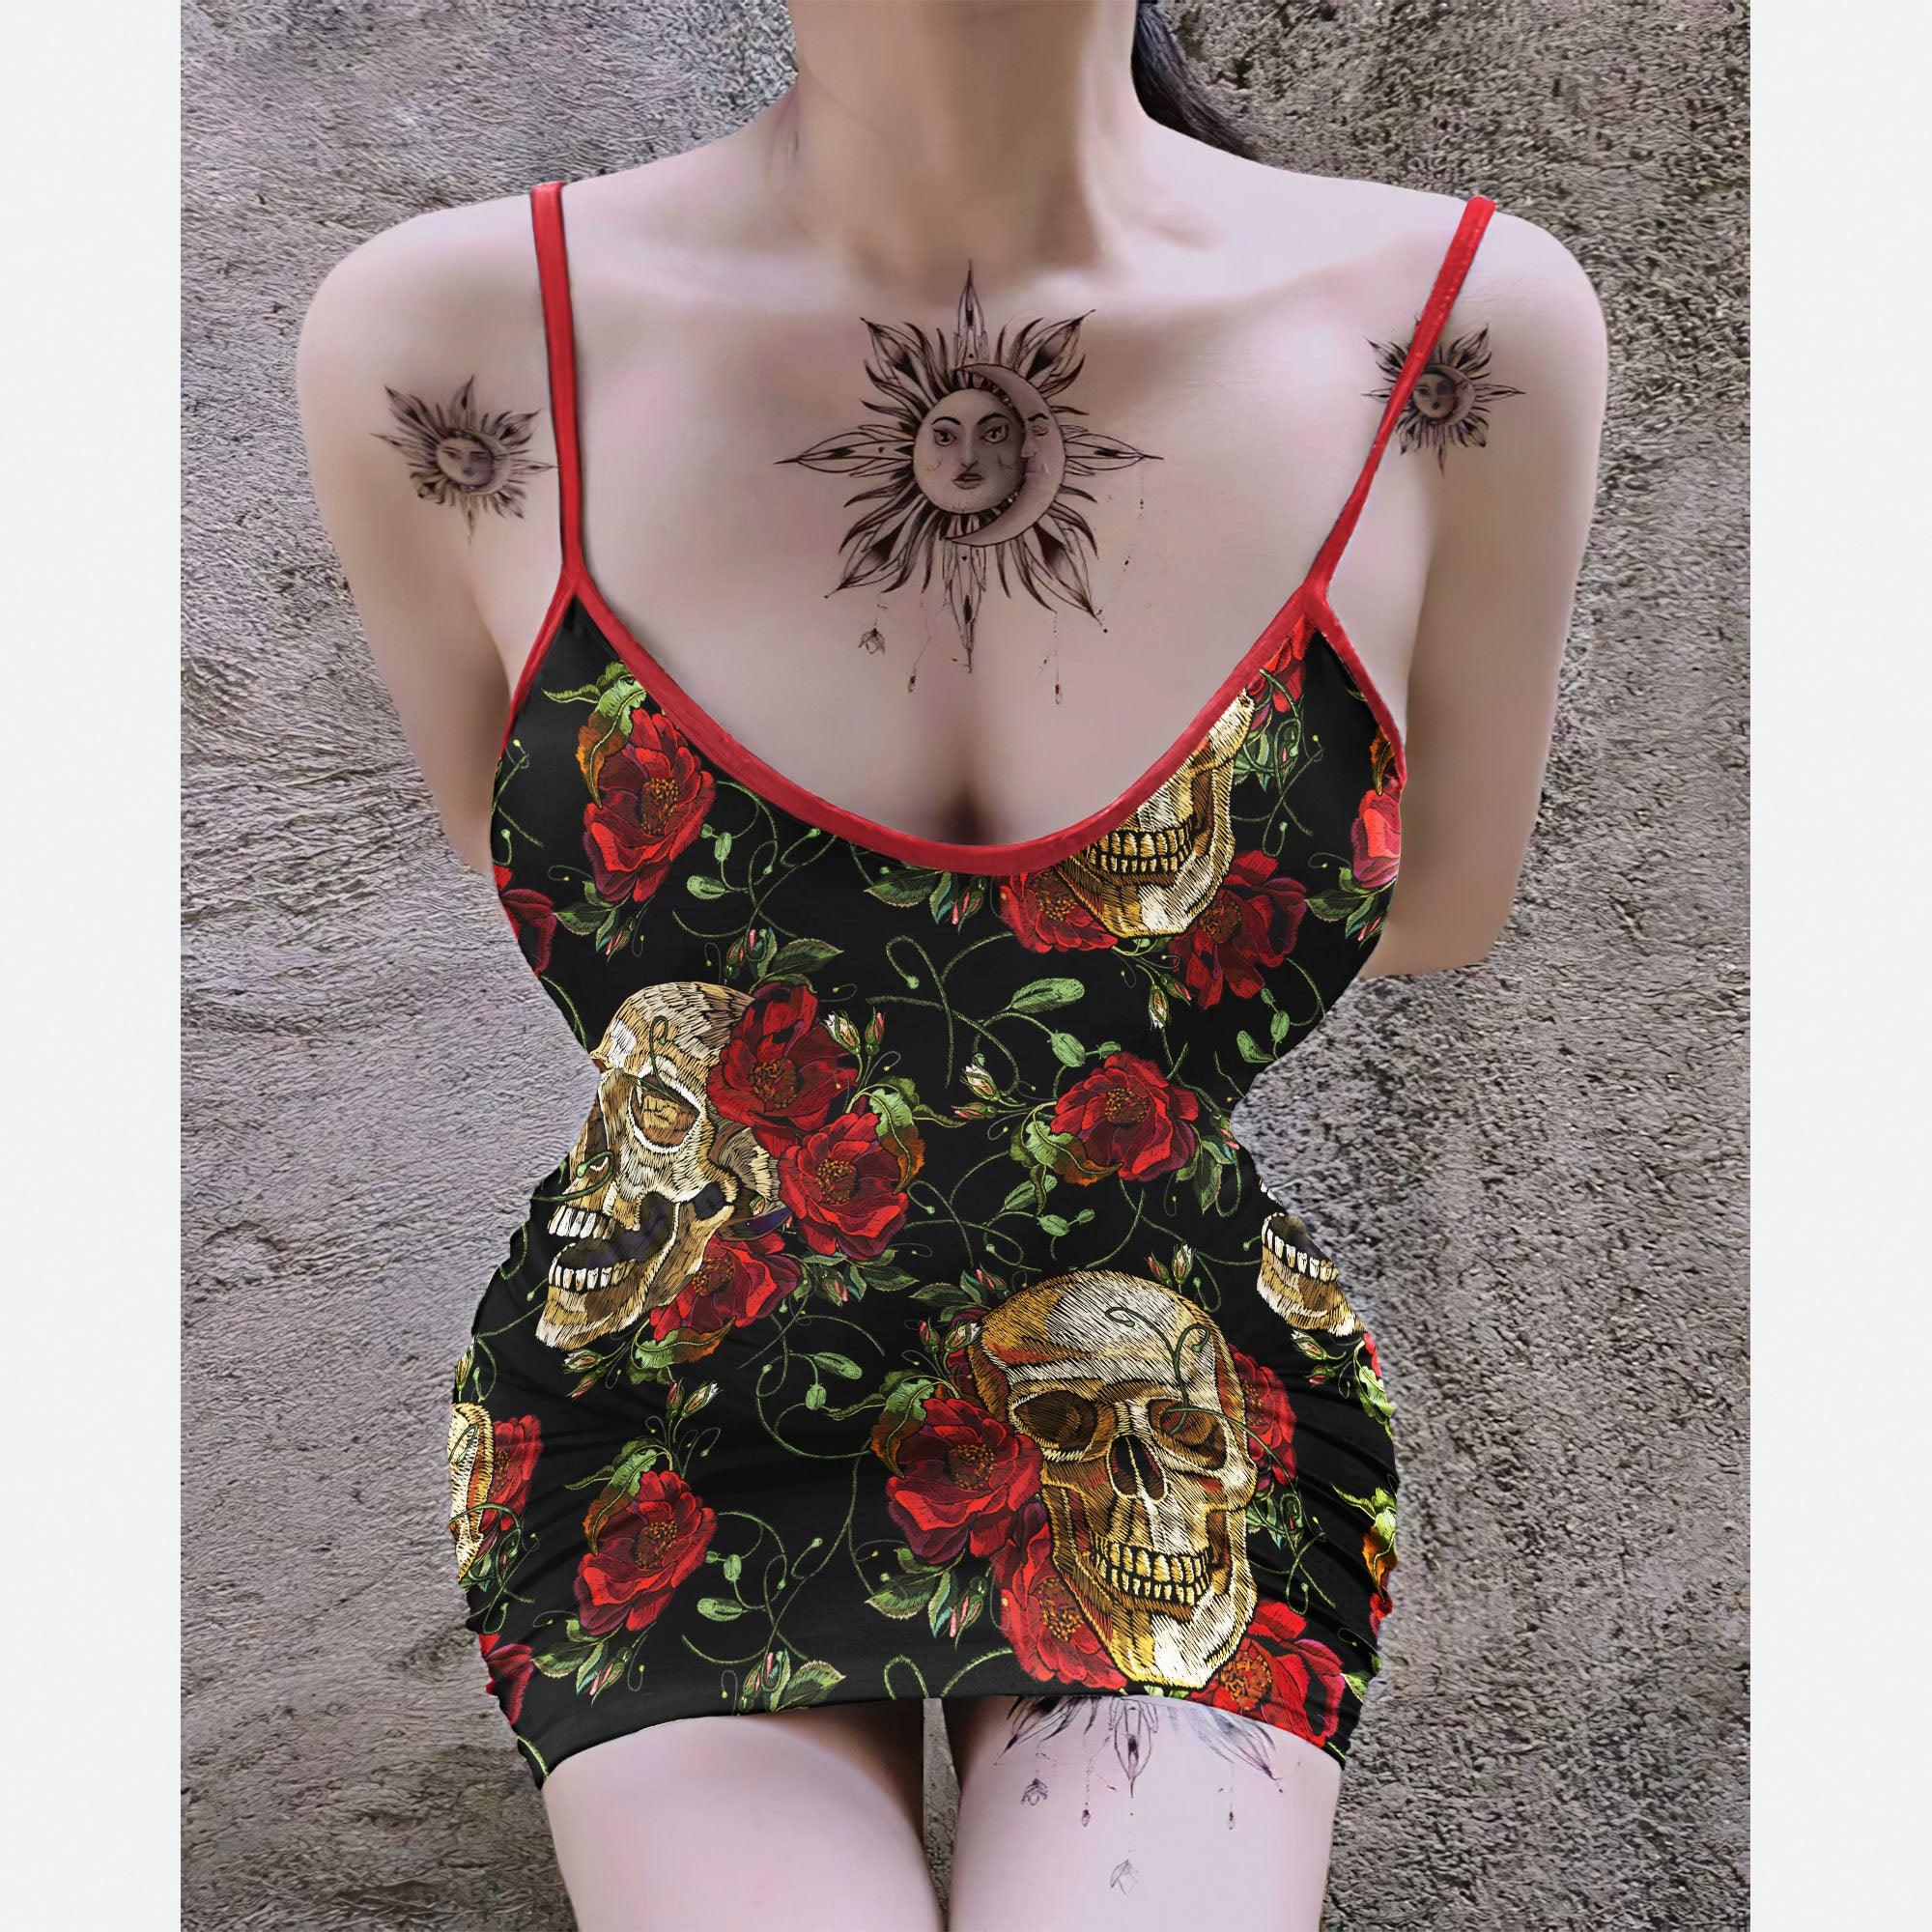 Red Skull Flower Pattern Printed Body Dress, Naughty Sleeveless Minidress For Women-Wonder Skull